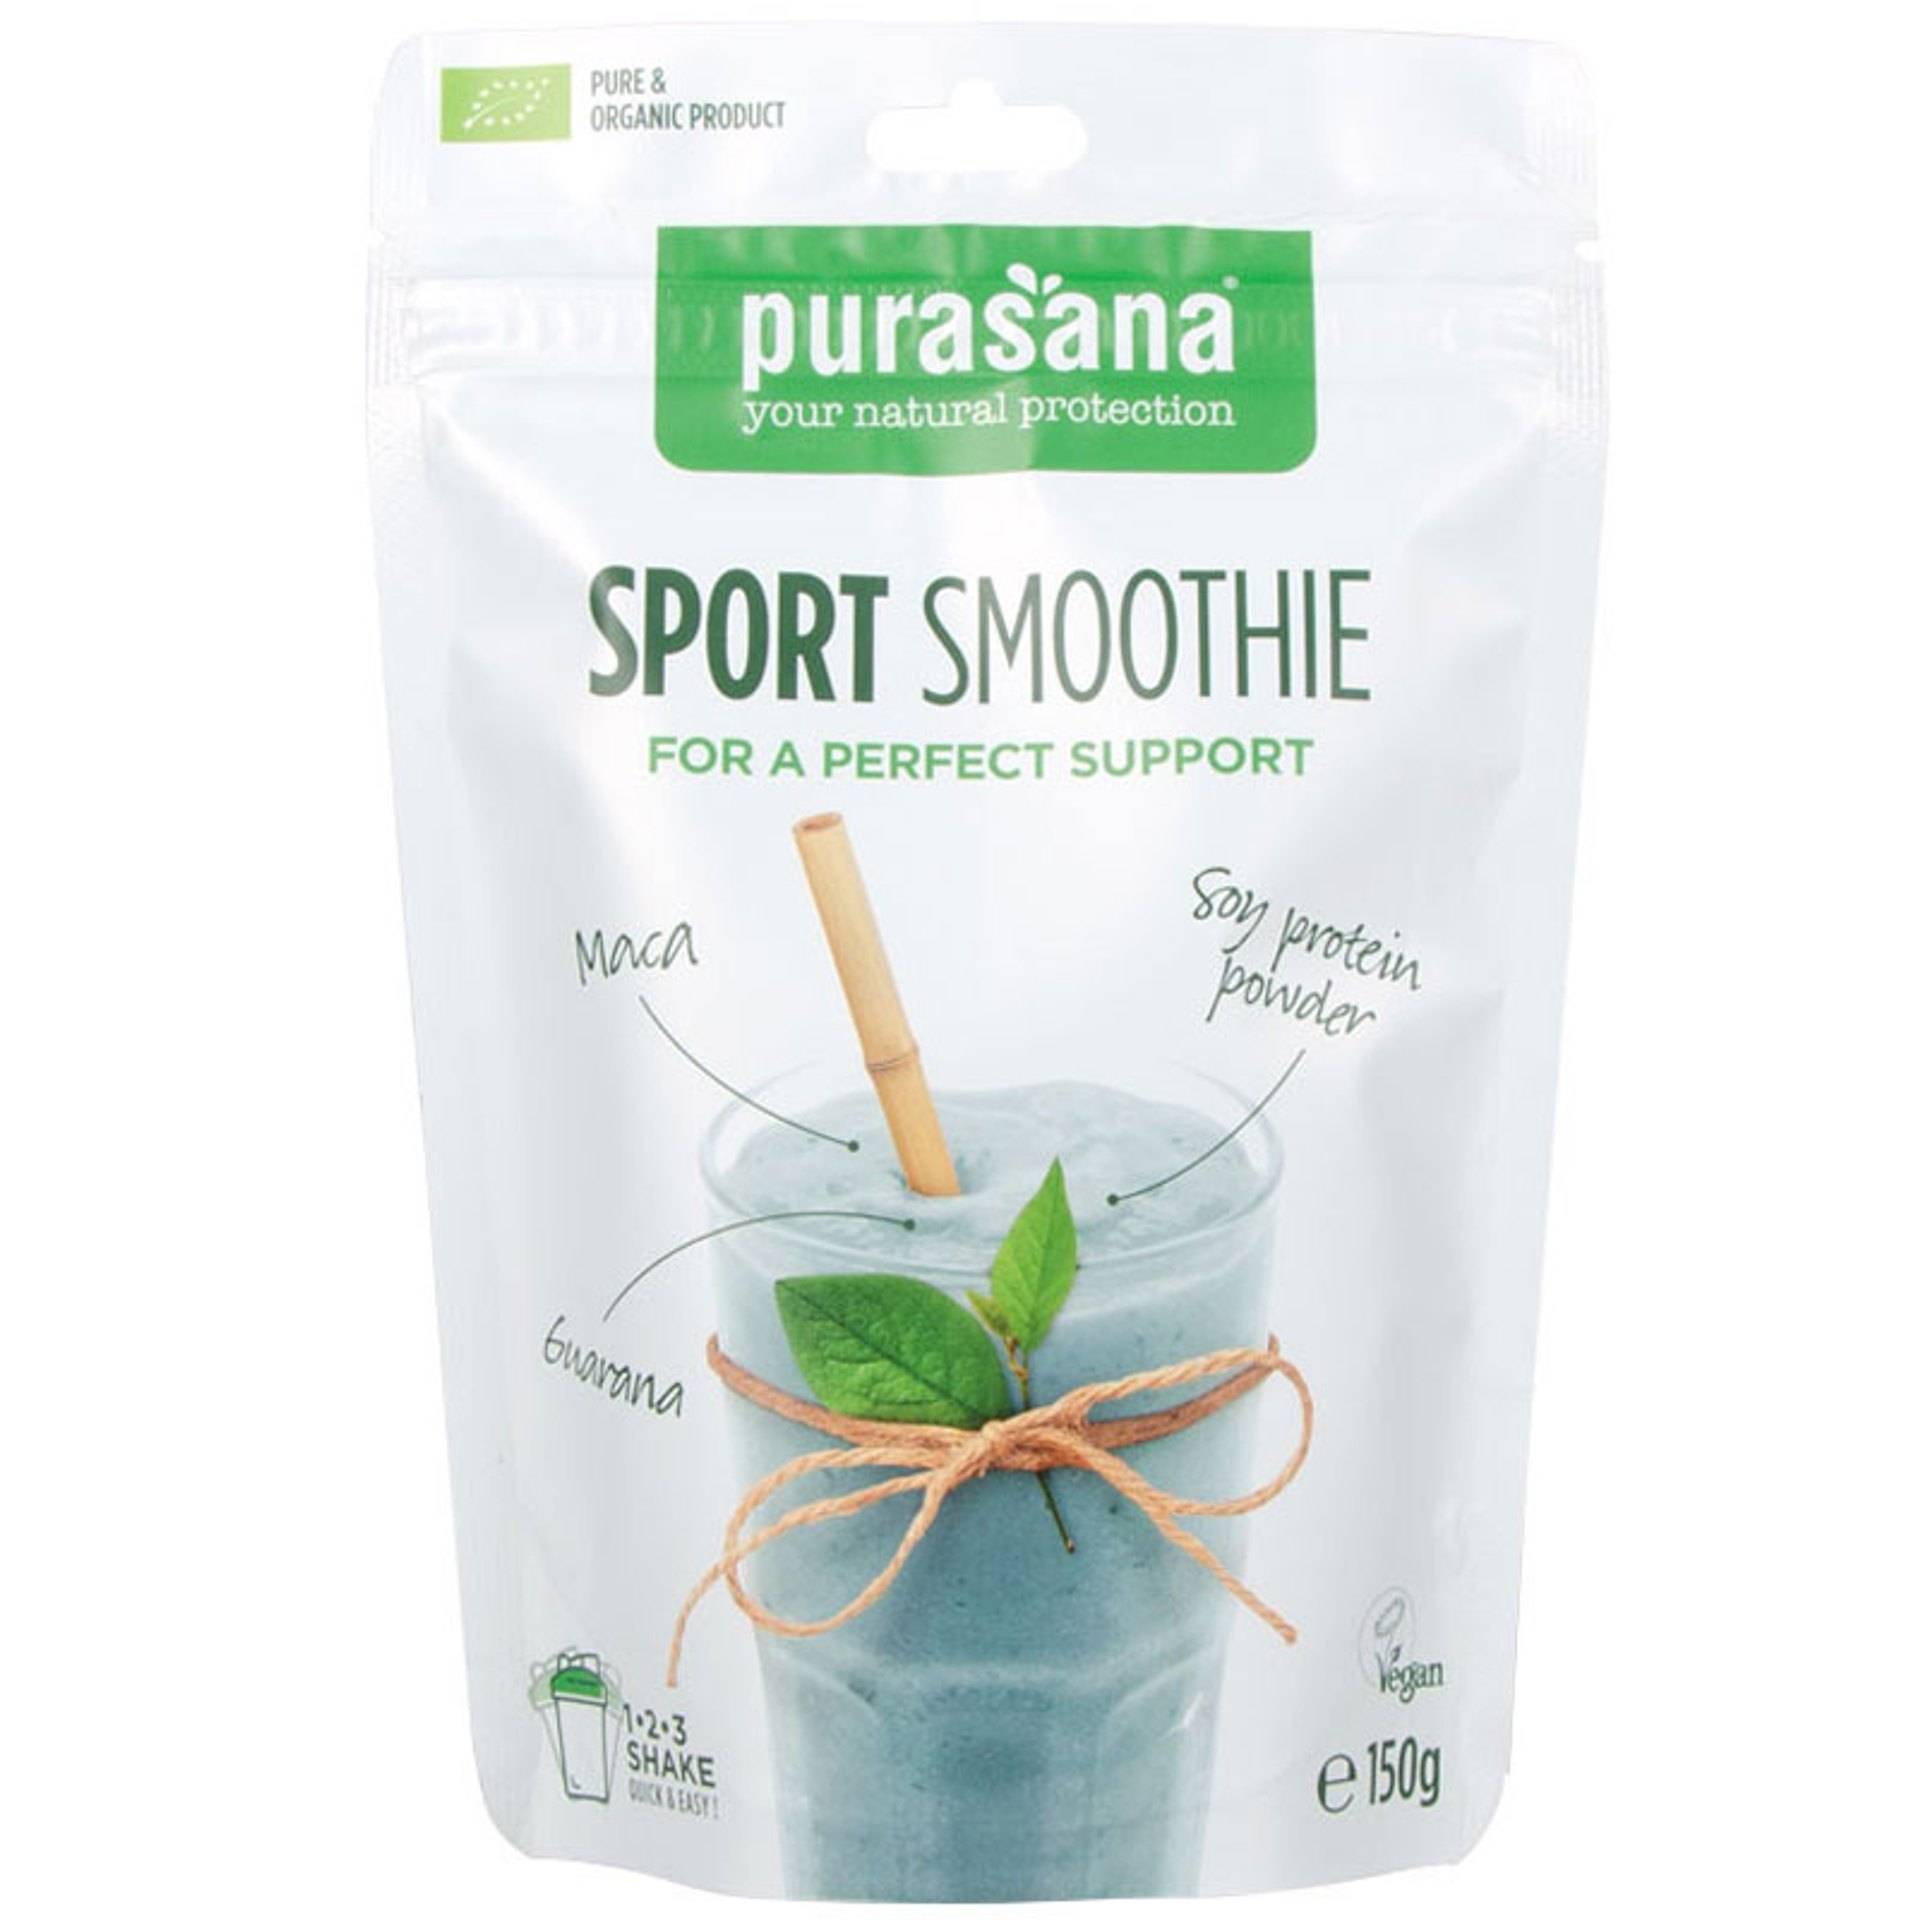 Purasana_Sport-Smoothie-Shake.jpg